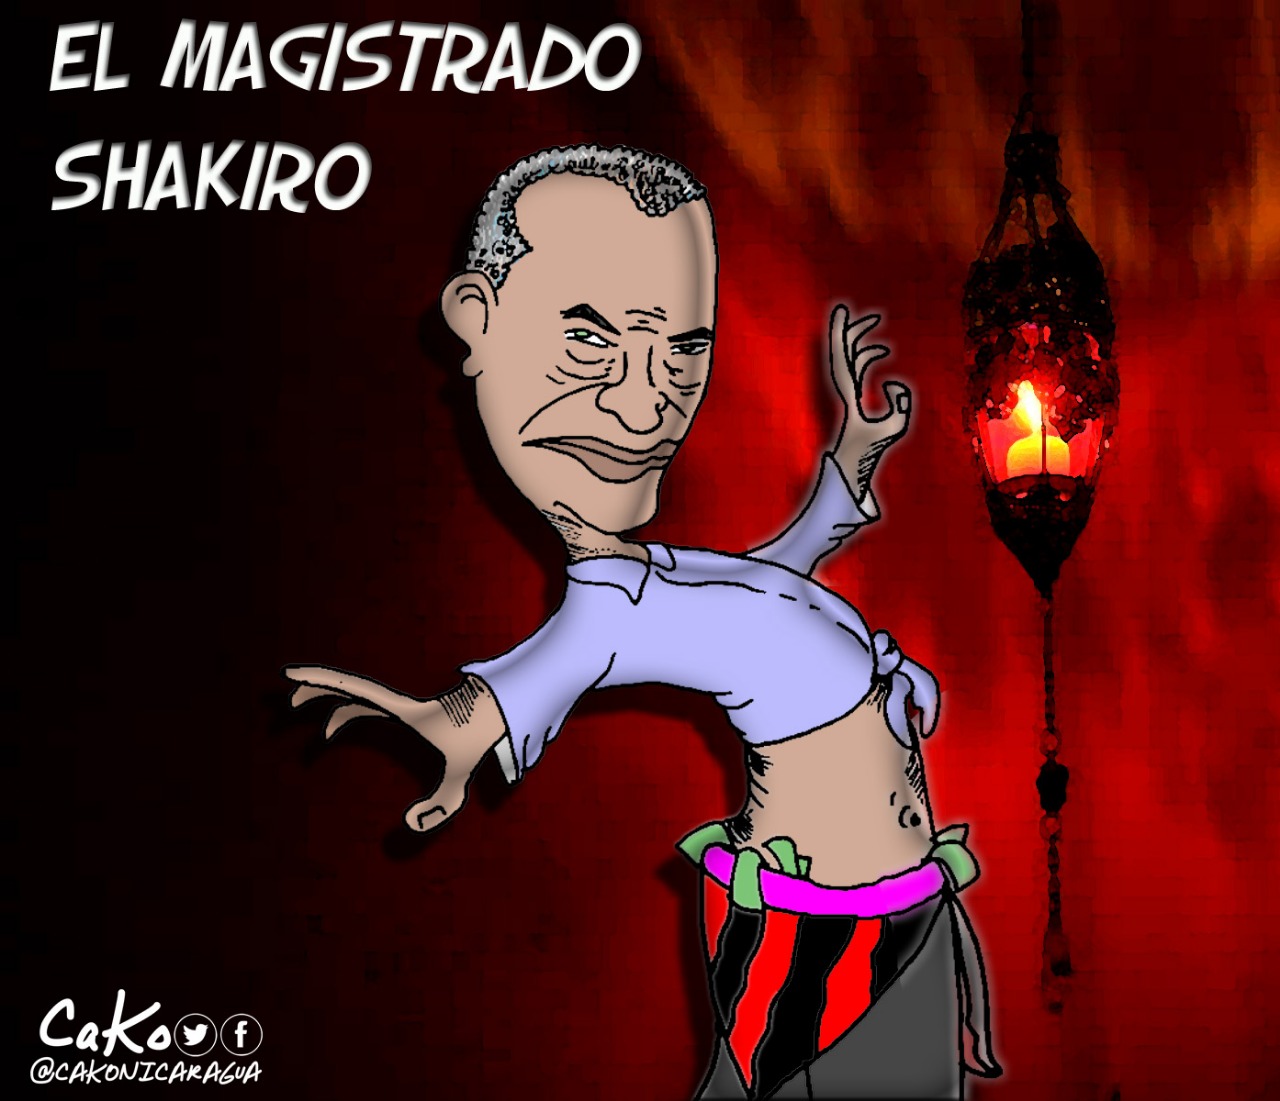 La Caricatura: El magistrado Shakiro